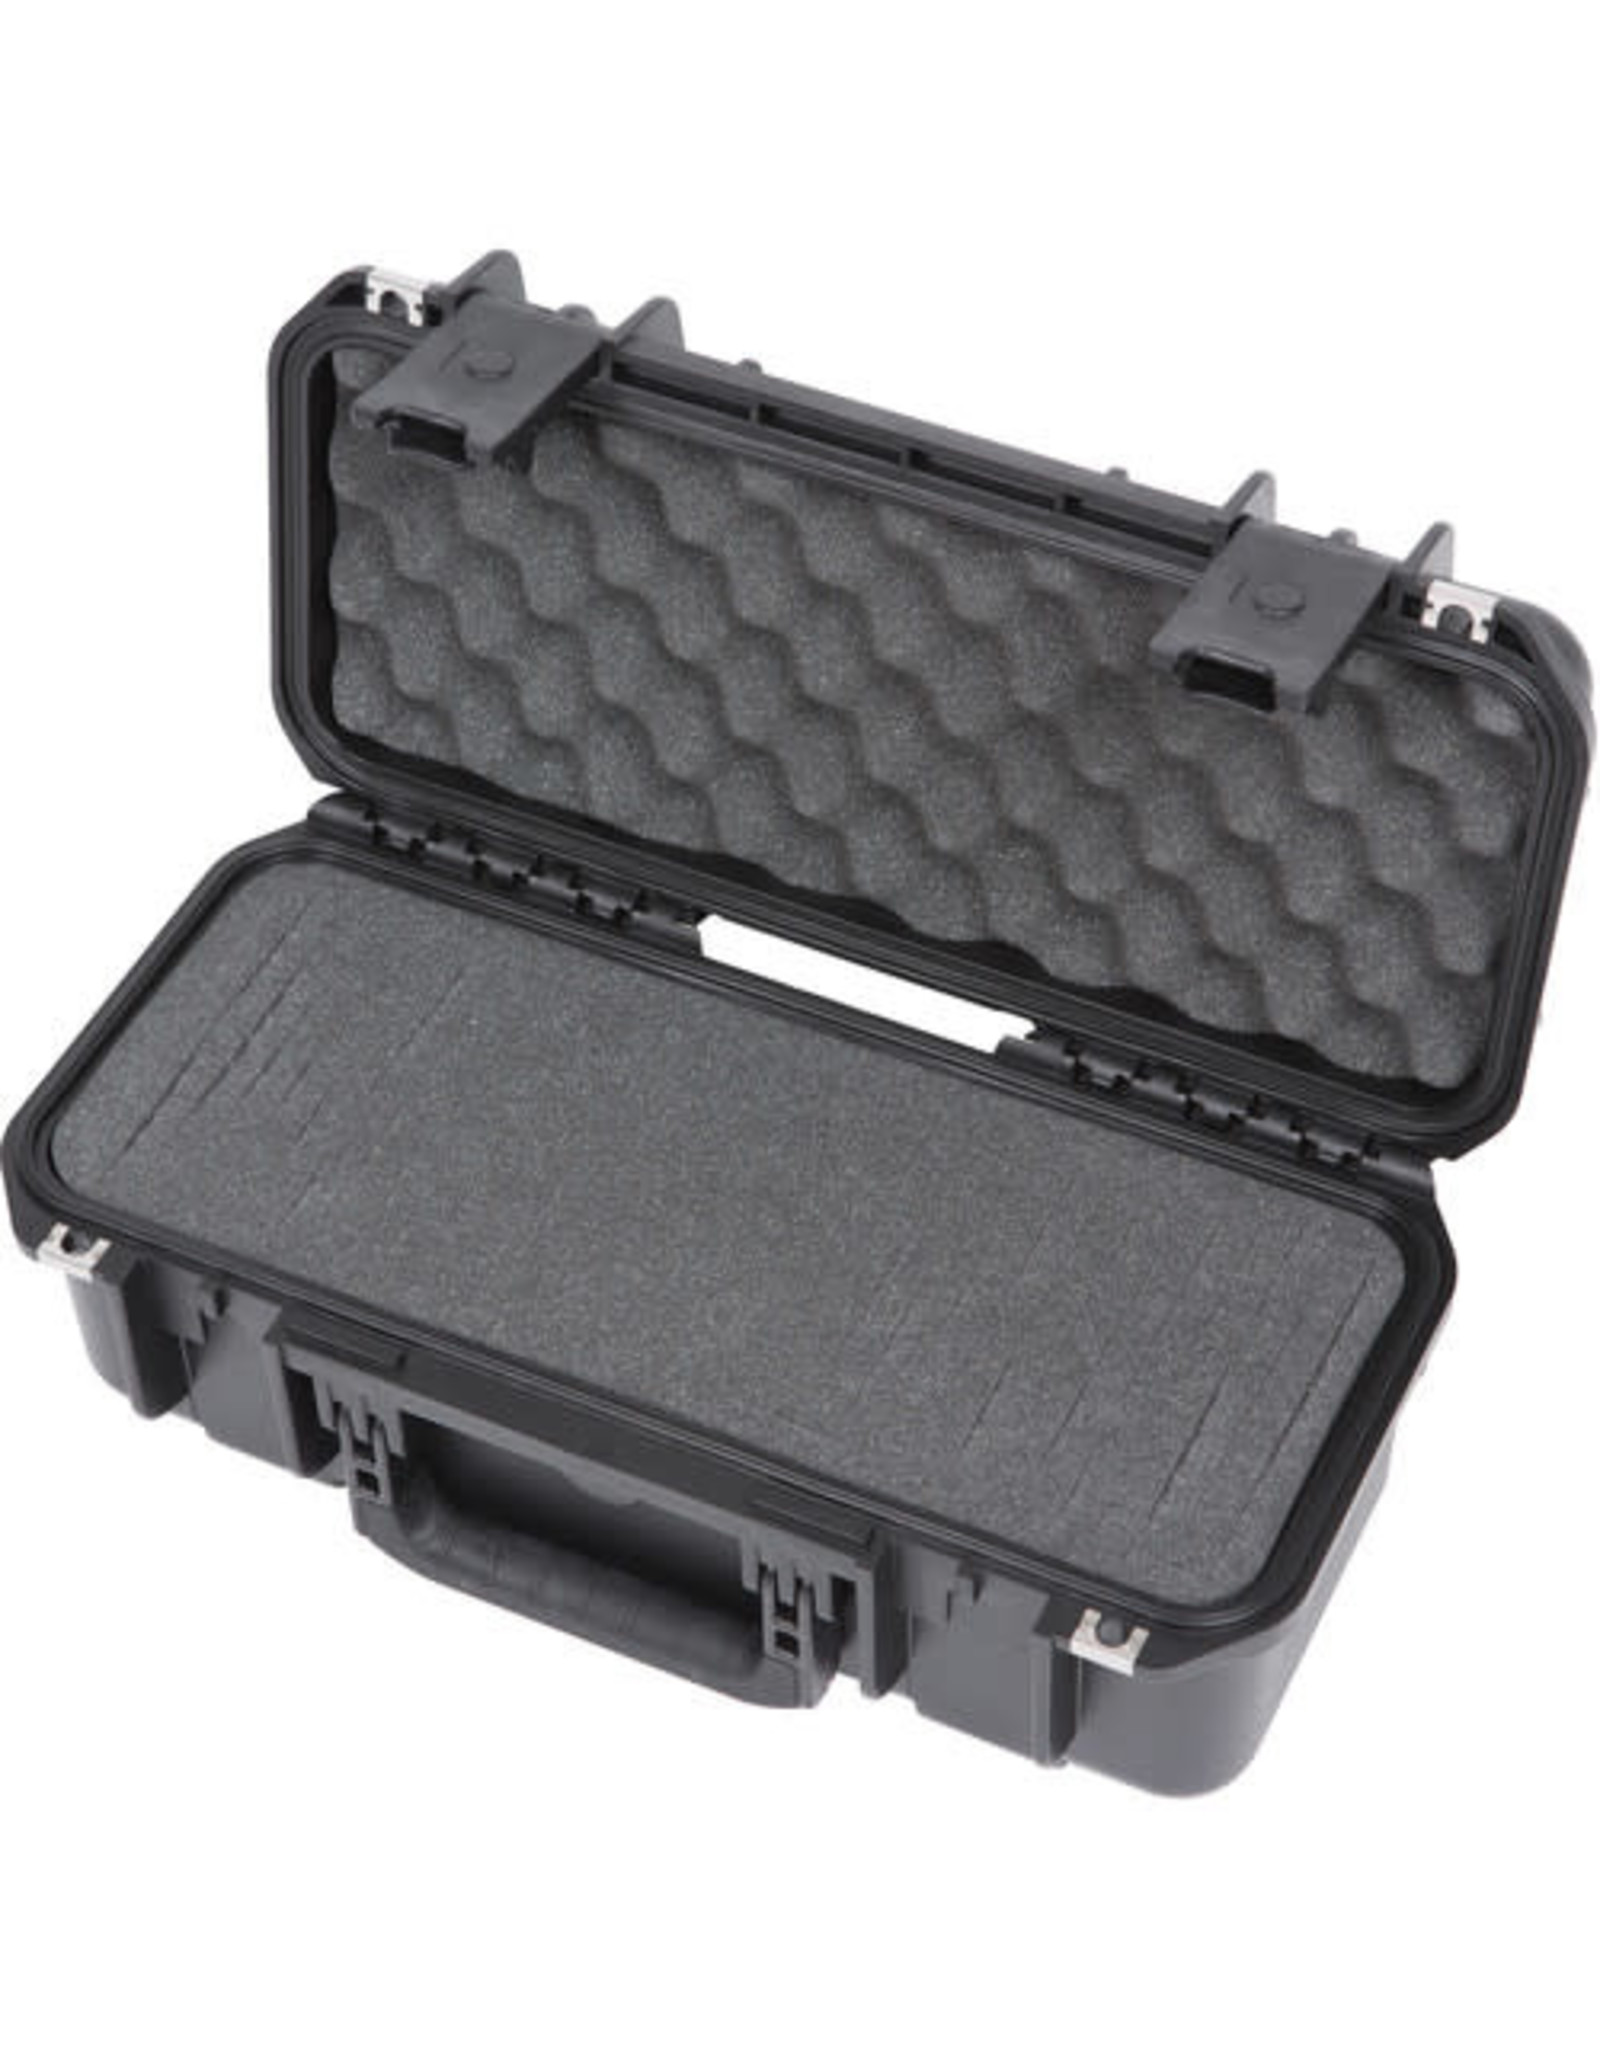 SKB Cases SKB 3i Series 3i-1706-6B-C Case with cubed Foam